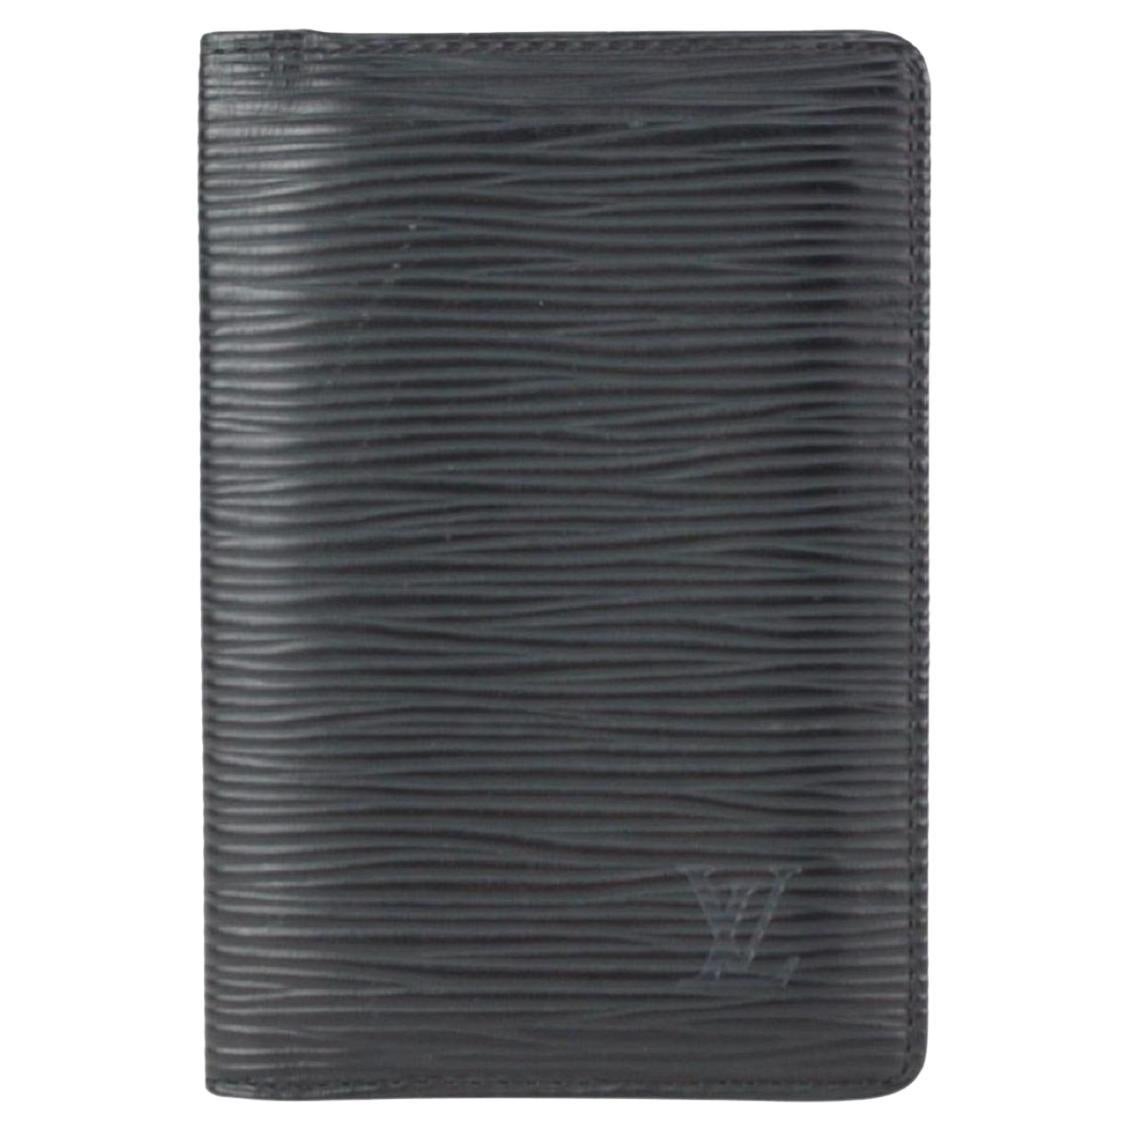 Louis Vuitton Black Epi Leather Noir Porte Cartes Card Holder Wallet 824lv51